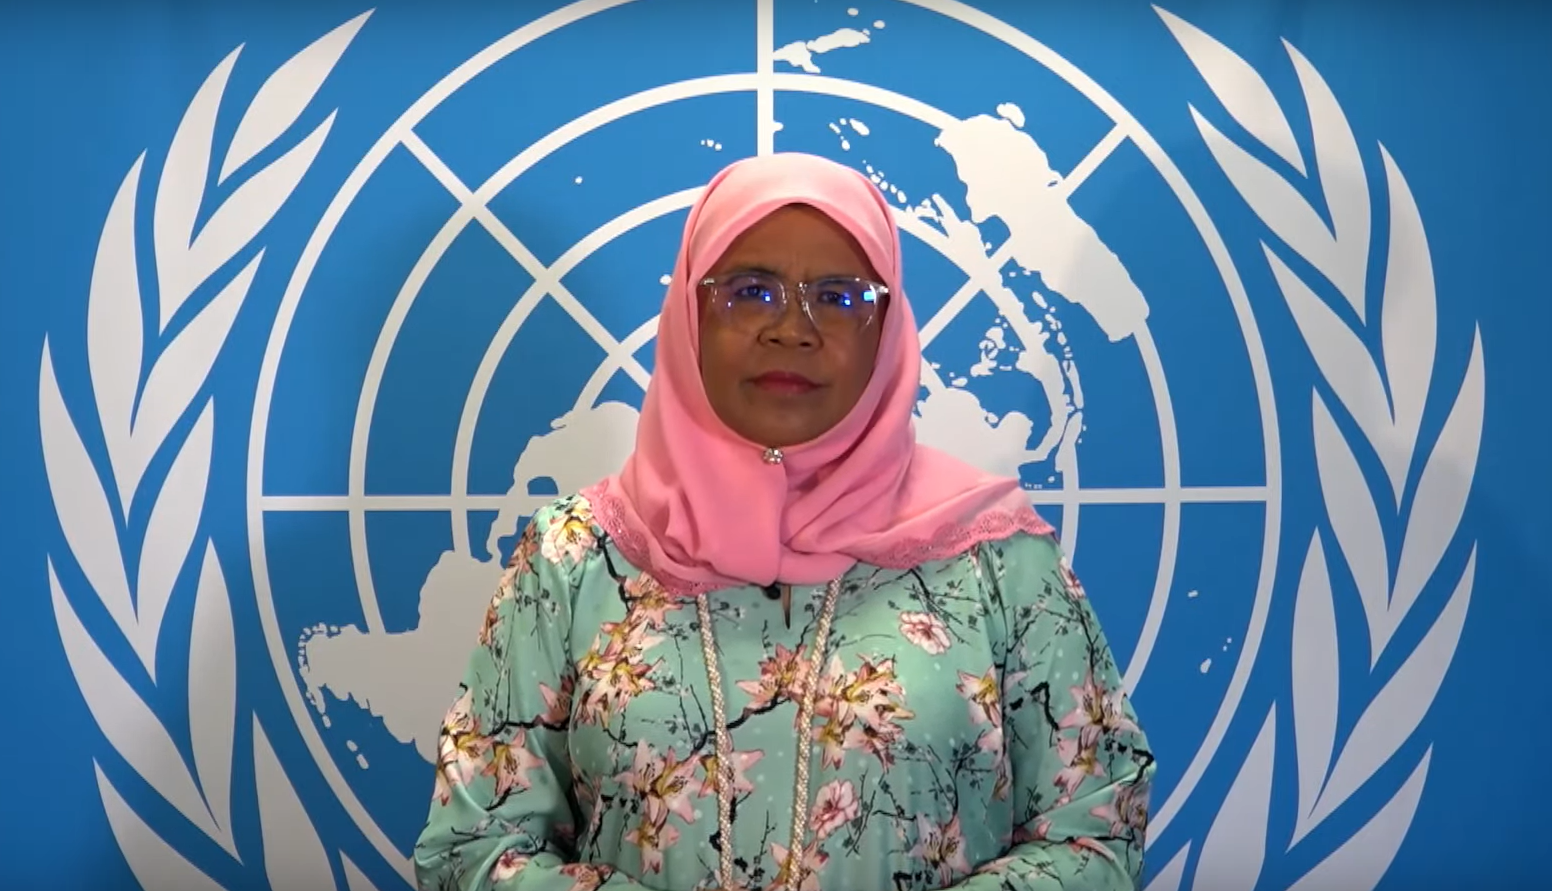 współpracować, by skutecznie walczyć z kryzysem klimatycznym – przekonywałaMaimunah Mohd Sharif, dyrektor wykonawcza programu Narodów Zjednoczonych ds. Osiedli Ludzkich (UN-Habitat), fot. PTWP